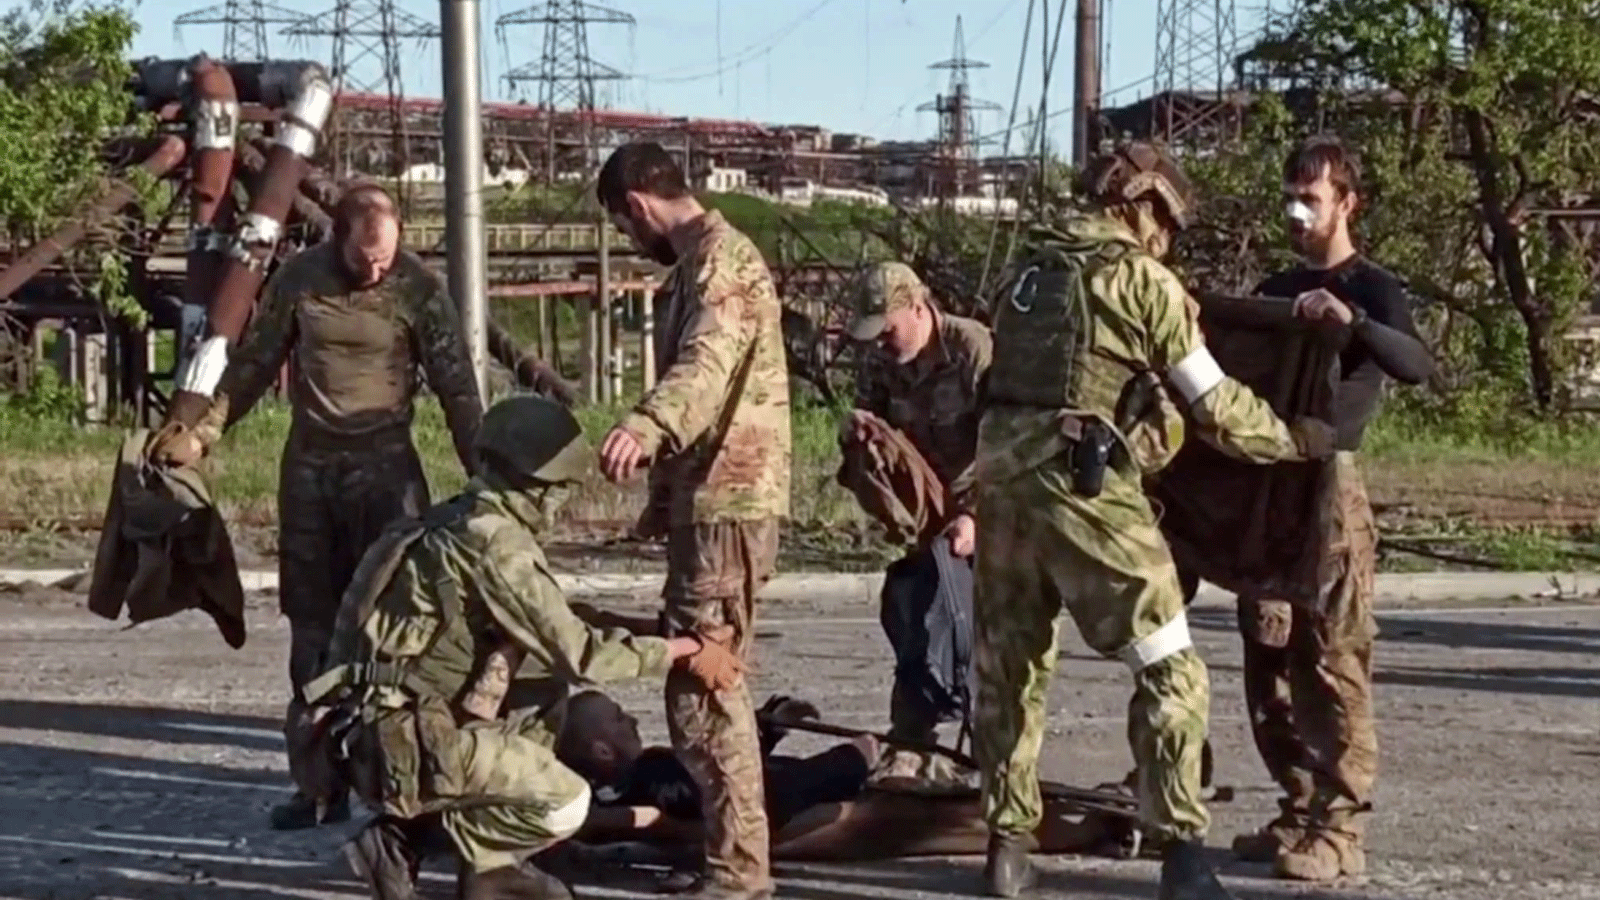 لقطة من مقطع فيديو نشرته وزارة الدفاع الروسية في 17 مايو\ أيار لجنود أوكرانيين أثناء تفتيشهم من قبل أفراد عسكريين انفصاليين بعد مغادرة مصنع آزوفستال للصلب المحاصر في مدينة ماريوبول الساحلية.